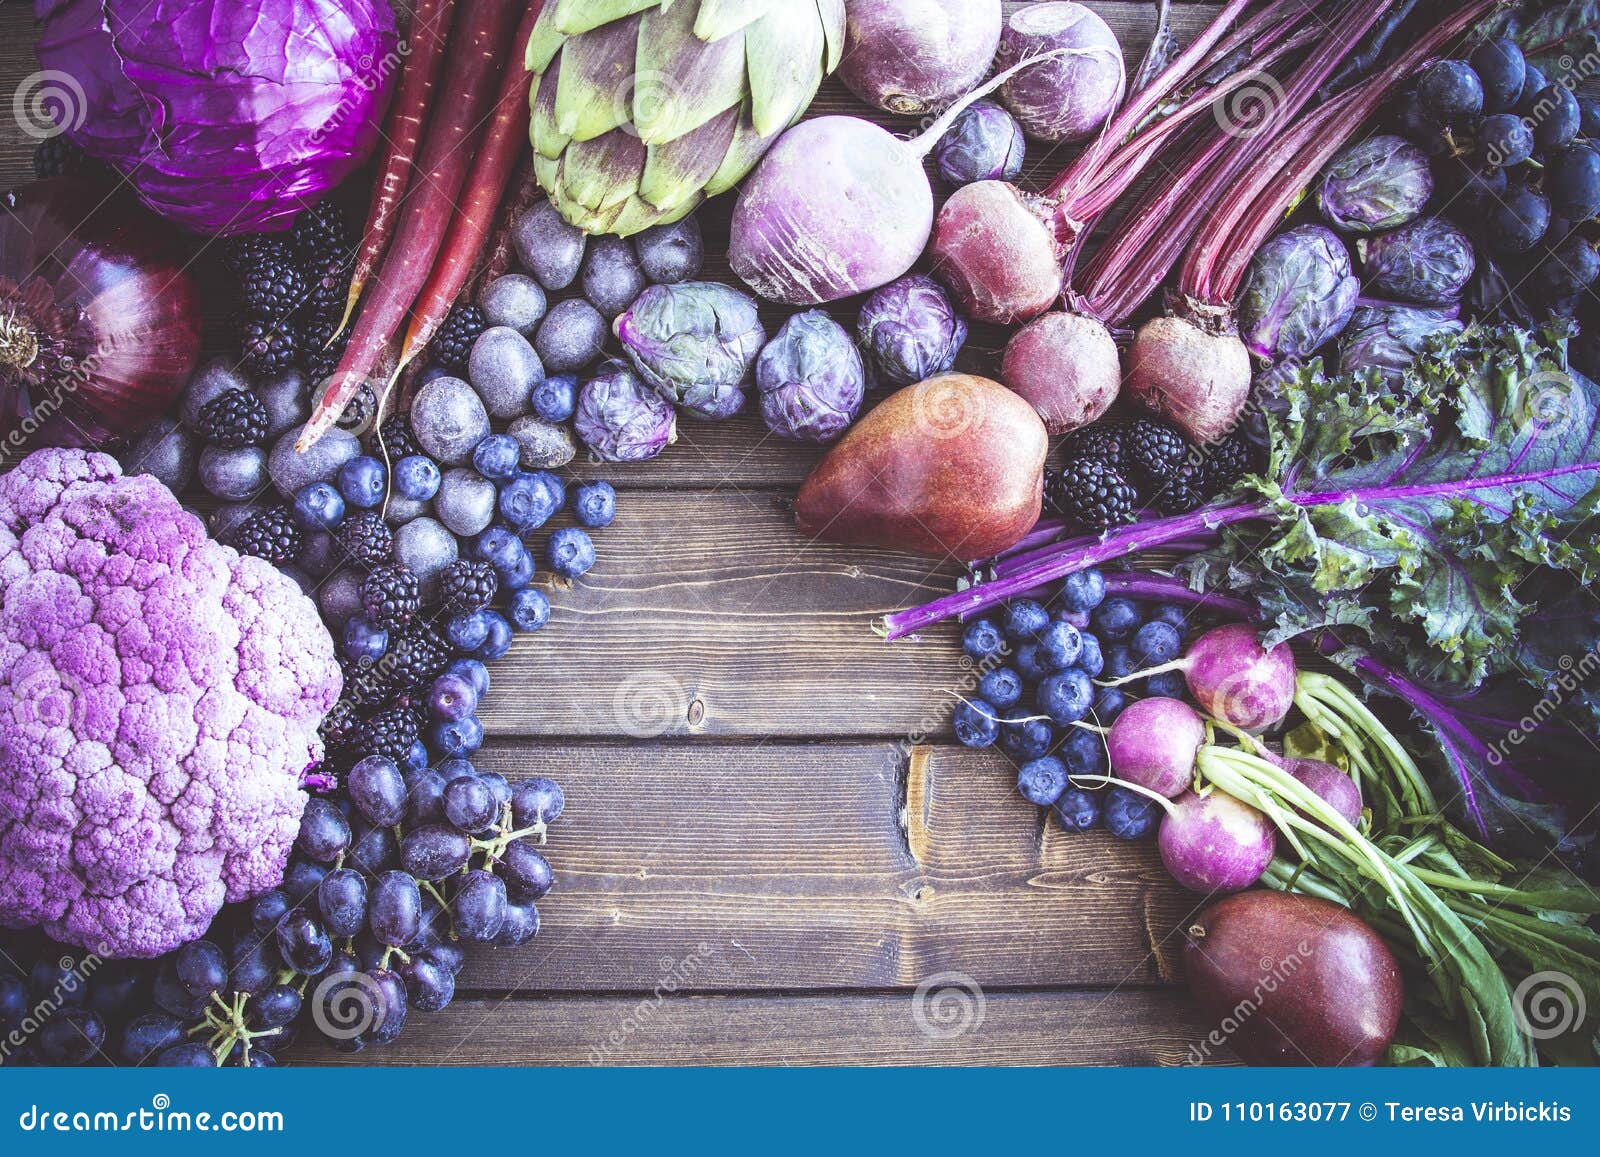 蓝紫色水果图片大全-蓝紫色水果高清图片下载-觅知网